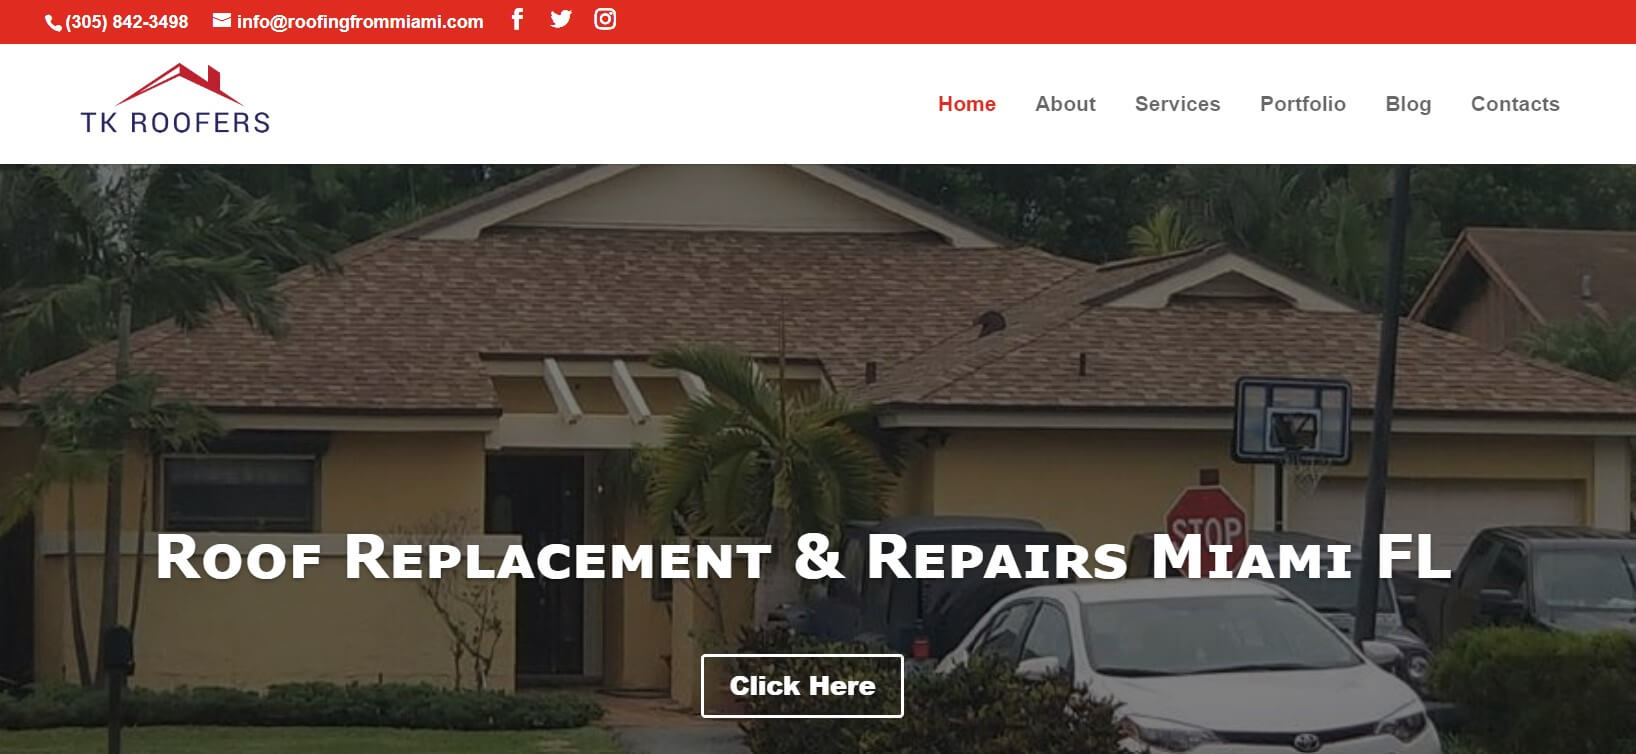 roofing contractor website